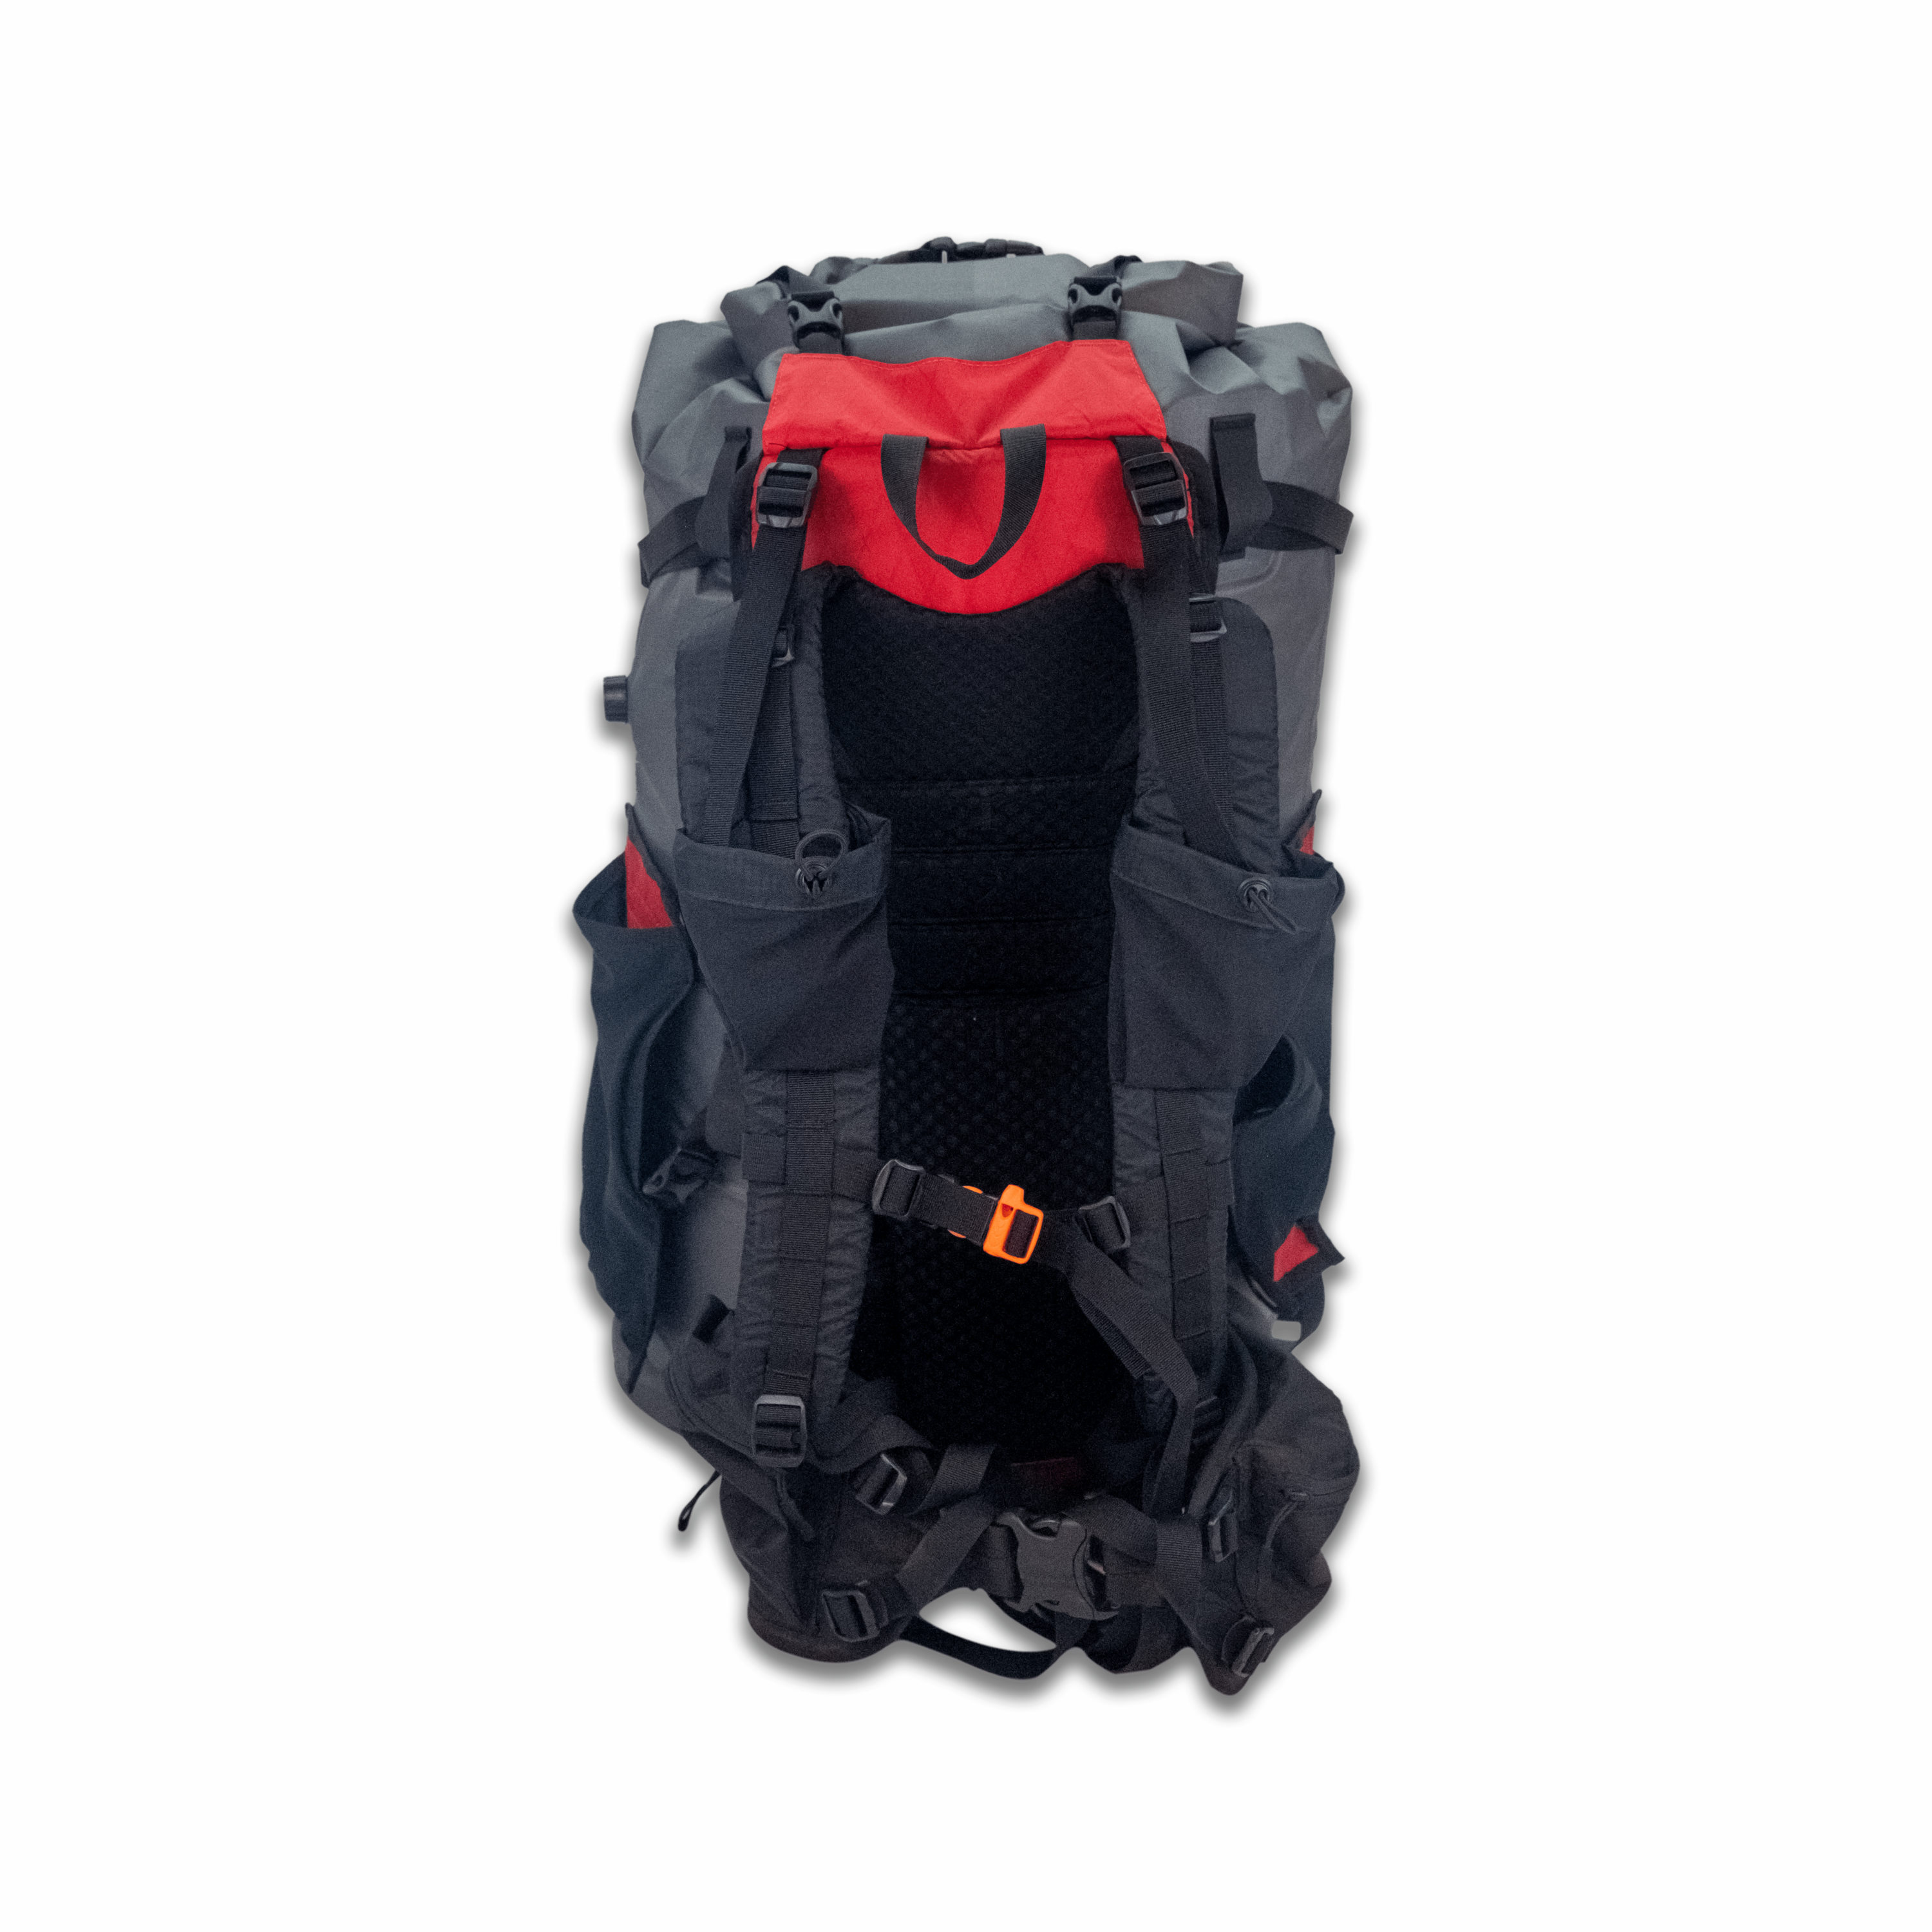 Flex PR Plus Pack Rafting Backpack